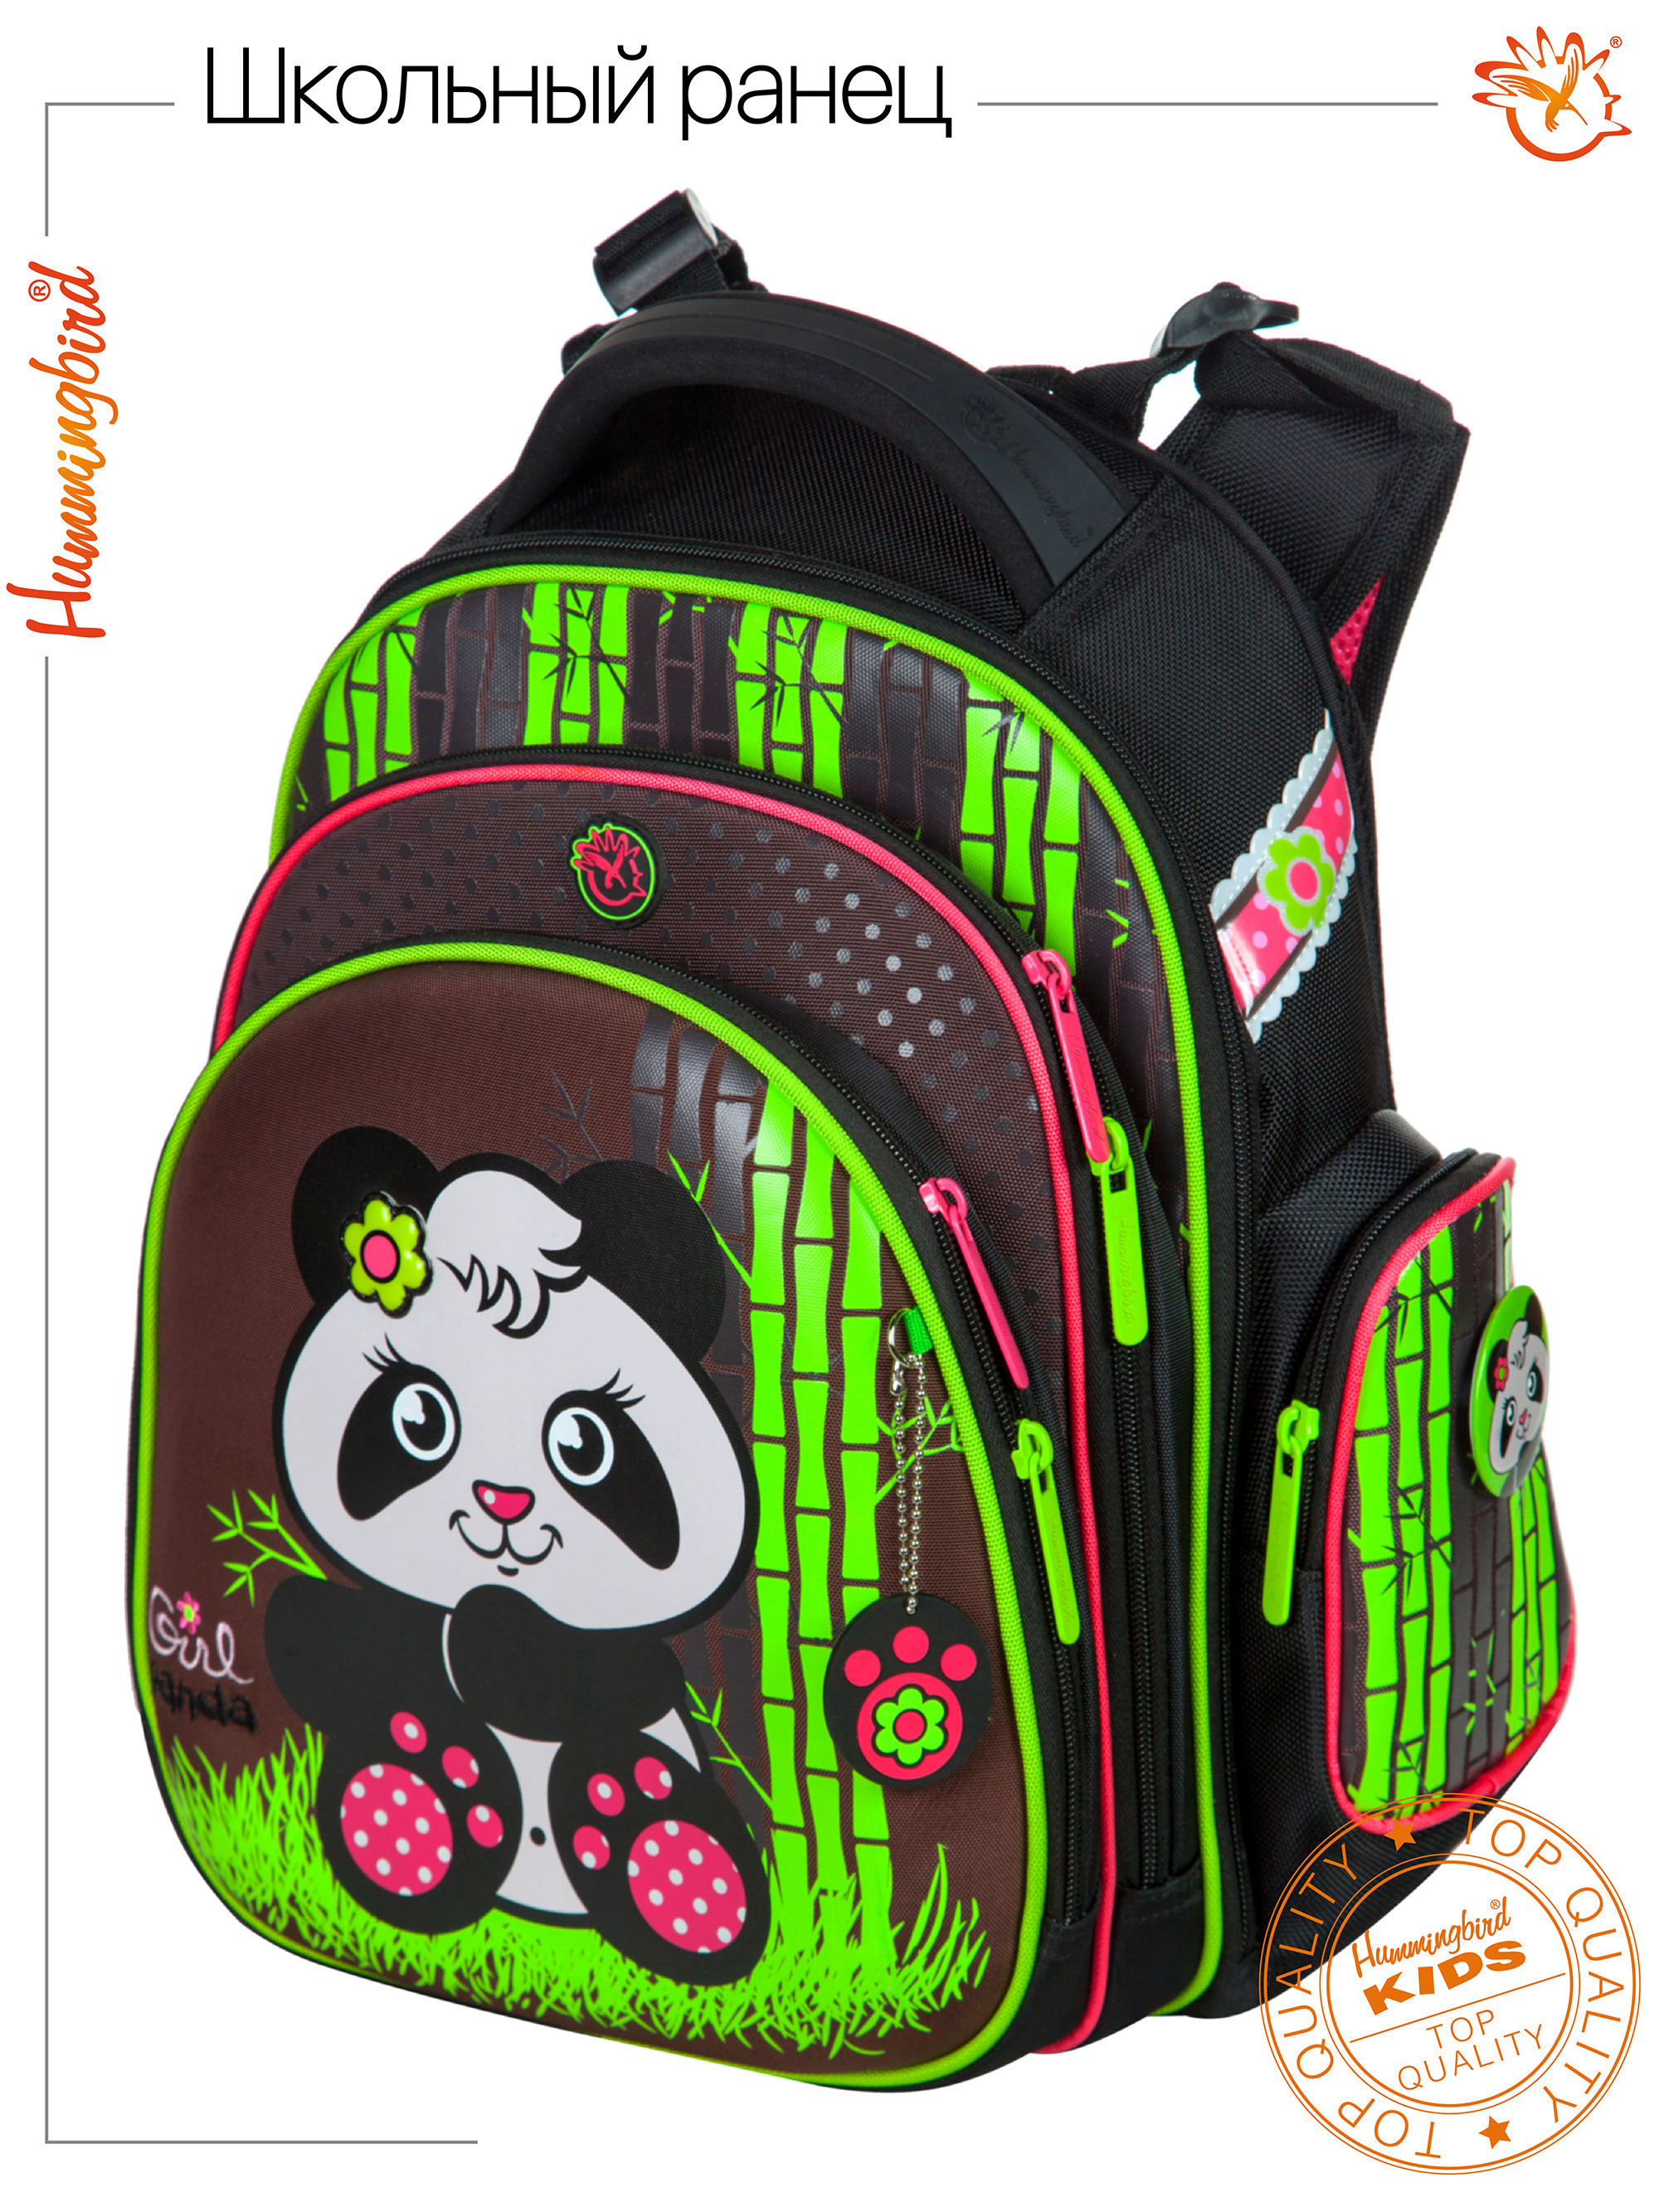 Купить школьный портфель. Tk40 : Hummingbird. Hummingbird рюкзак girl Panda. Рюкзак школьный Hummingbird для девочки. Tk56 : Hummingbird.